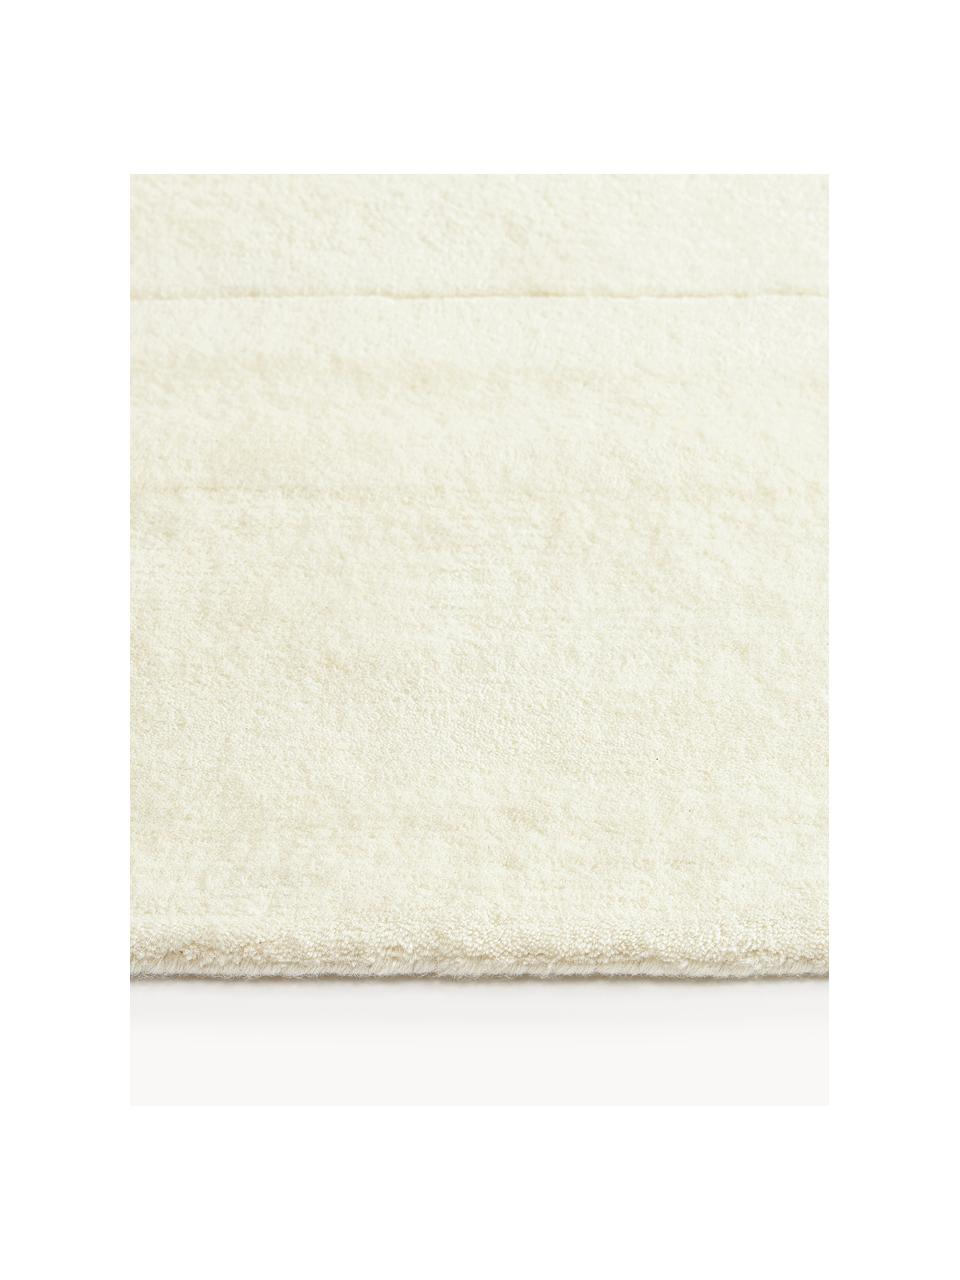 Ručně tkaný vlněný koberec s nízkým vlasem Gwyneth, 100 % vlna, certifikace RWS

V prvních týdnech používání vlněných koberců se může objevit charakteristický jev uvolňování vláken, který po několika týdnech používání zmizí., Tlumeně bílá, Š 160 cm, D 230 cm (velikost M)